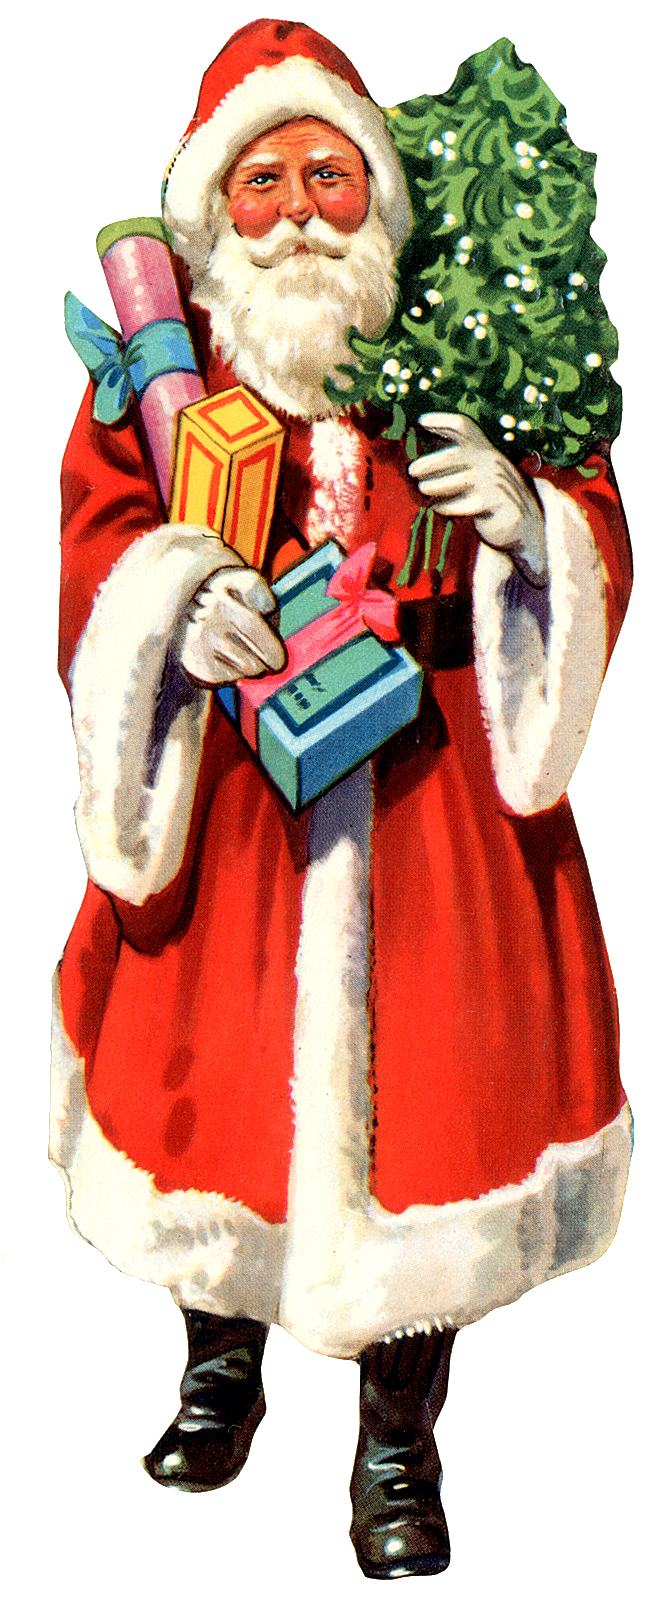 Free vintage clip art images: Vintage Santa Claus clipart